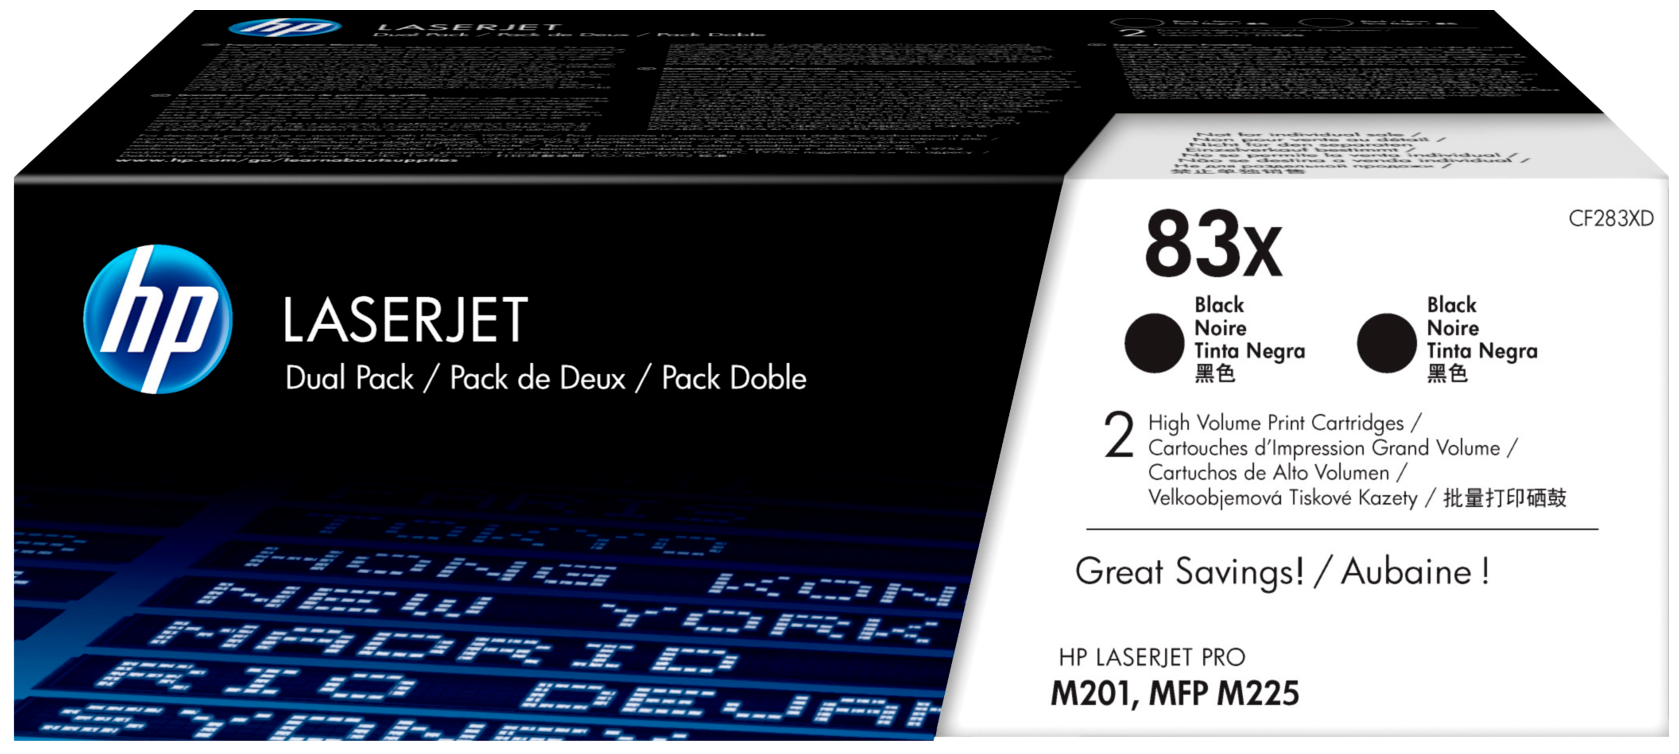 Двойная упаковка картриджей HP 83X черный [cf283xd] - фото №1